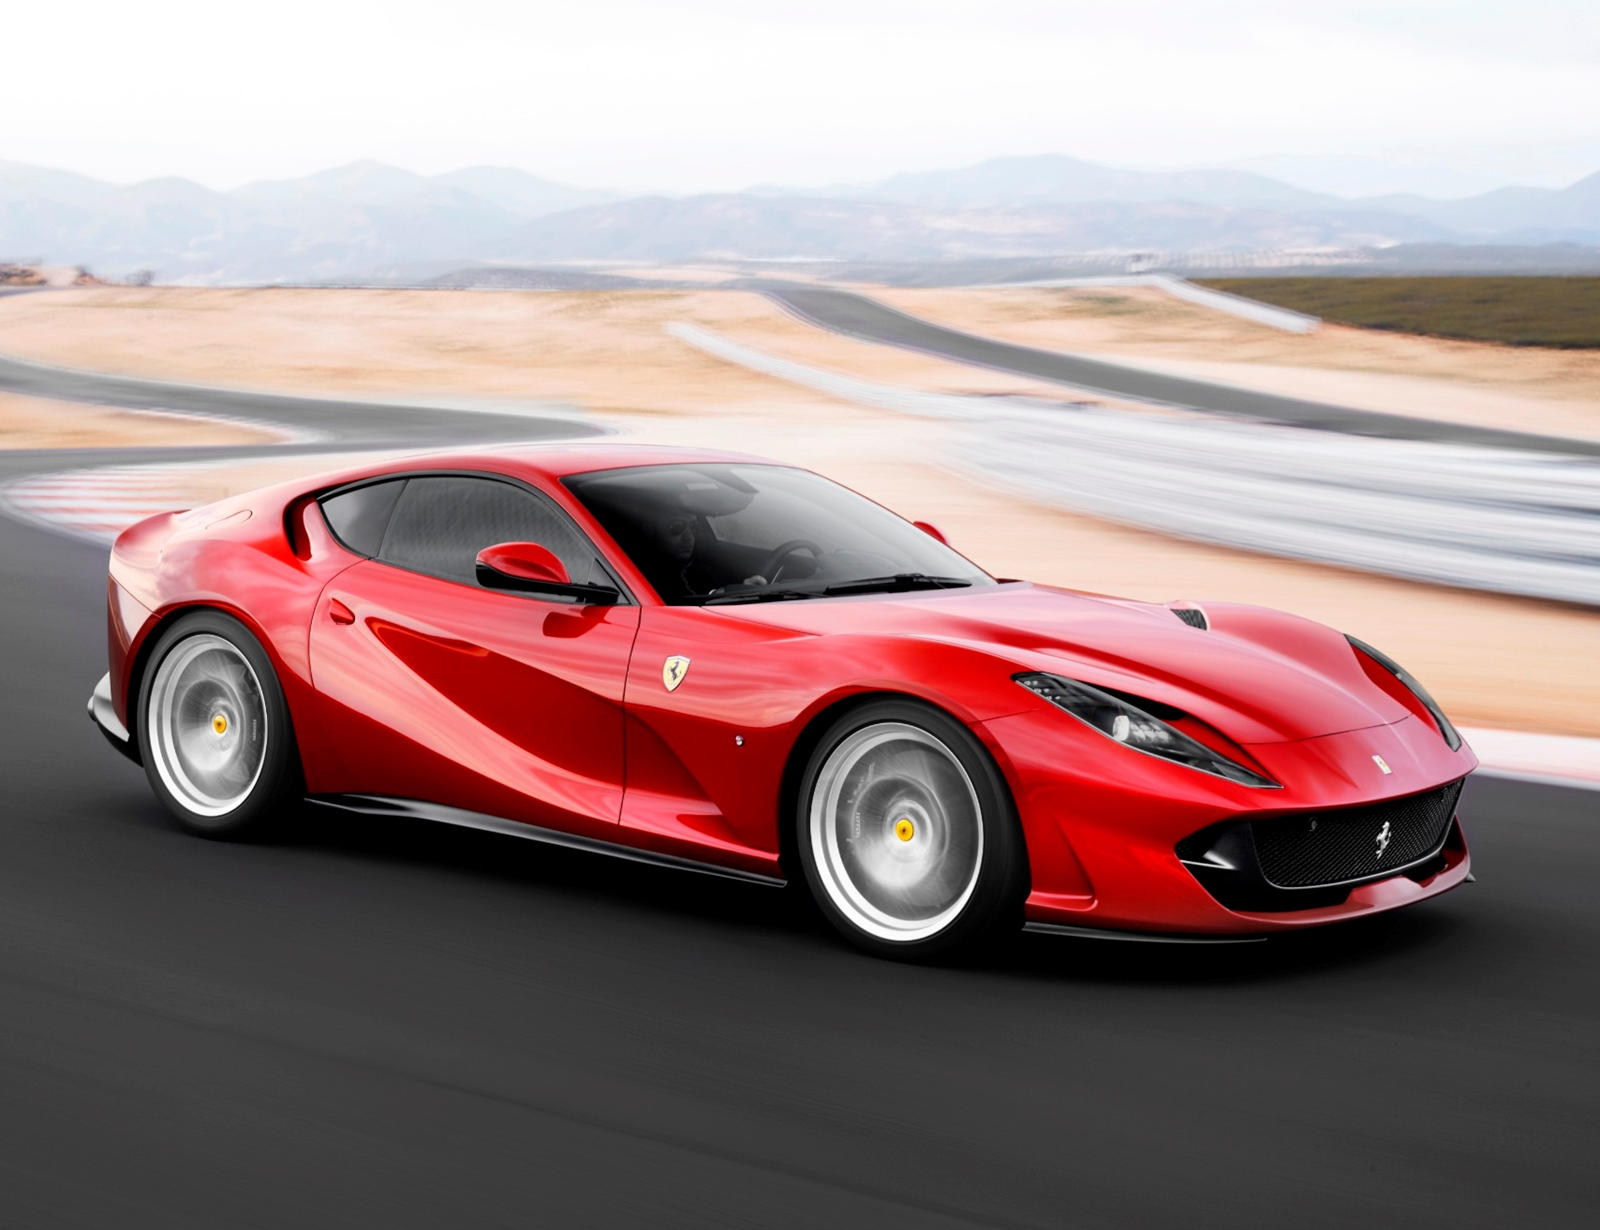 В прошлом месяце появились видеозаписи, на которых Ferrari тестирует замаскированный прототип нового гибридного суперкара, который будет располагаться ниже SF90 Stradale. Теперь Ferrari был замечен на тестировании новой хардкорной версии 812 Superfas